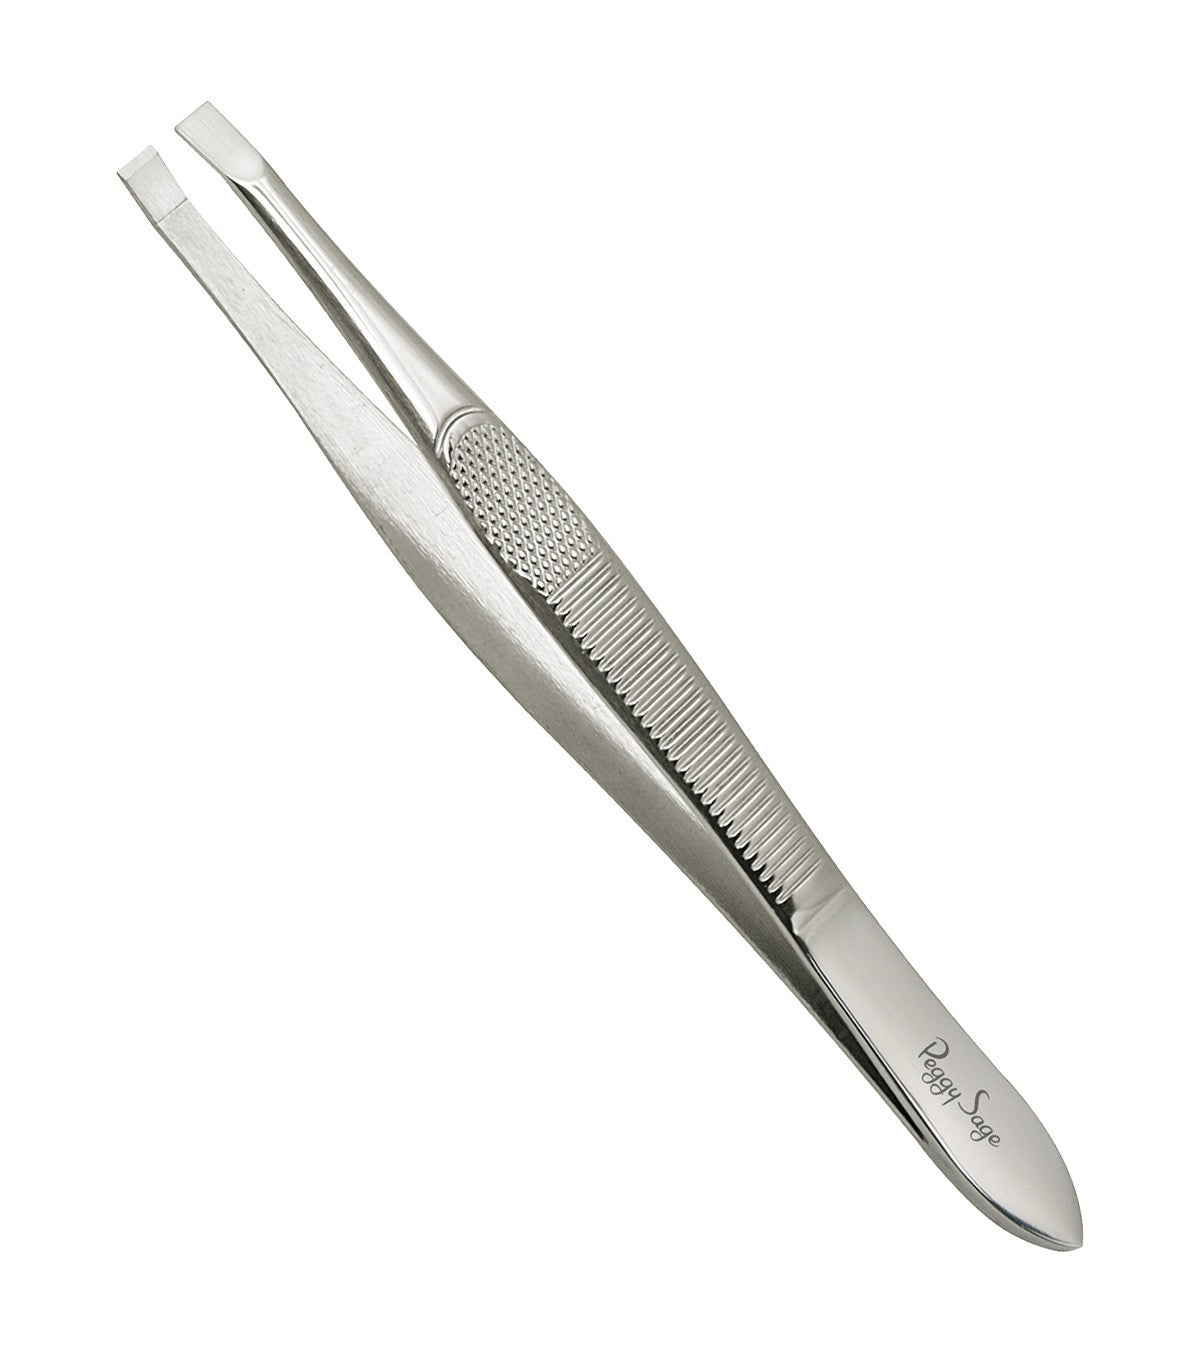 Epilation tweezers - Smoothly sharpened Ref 300041